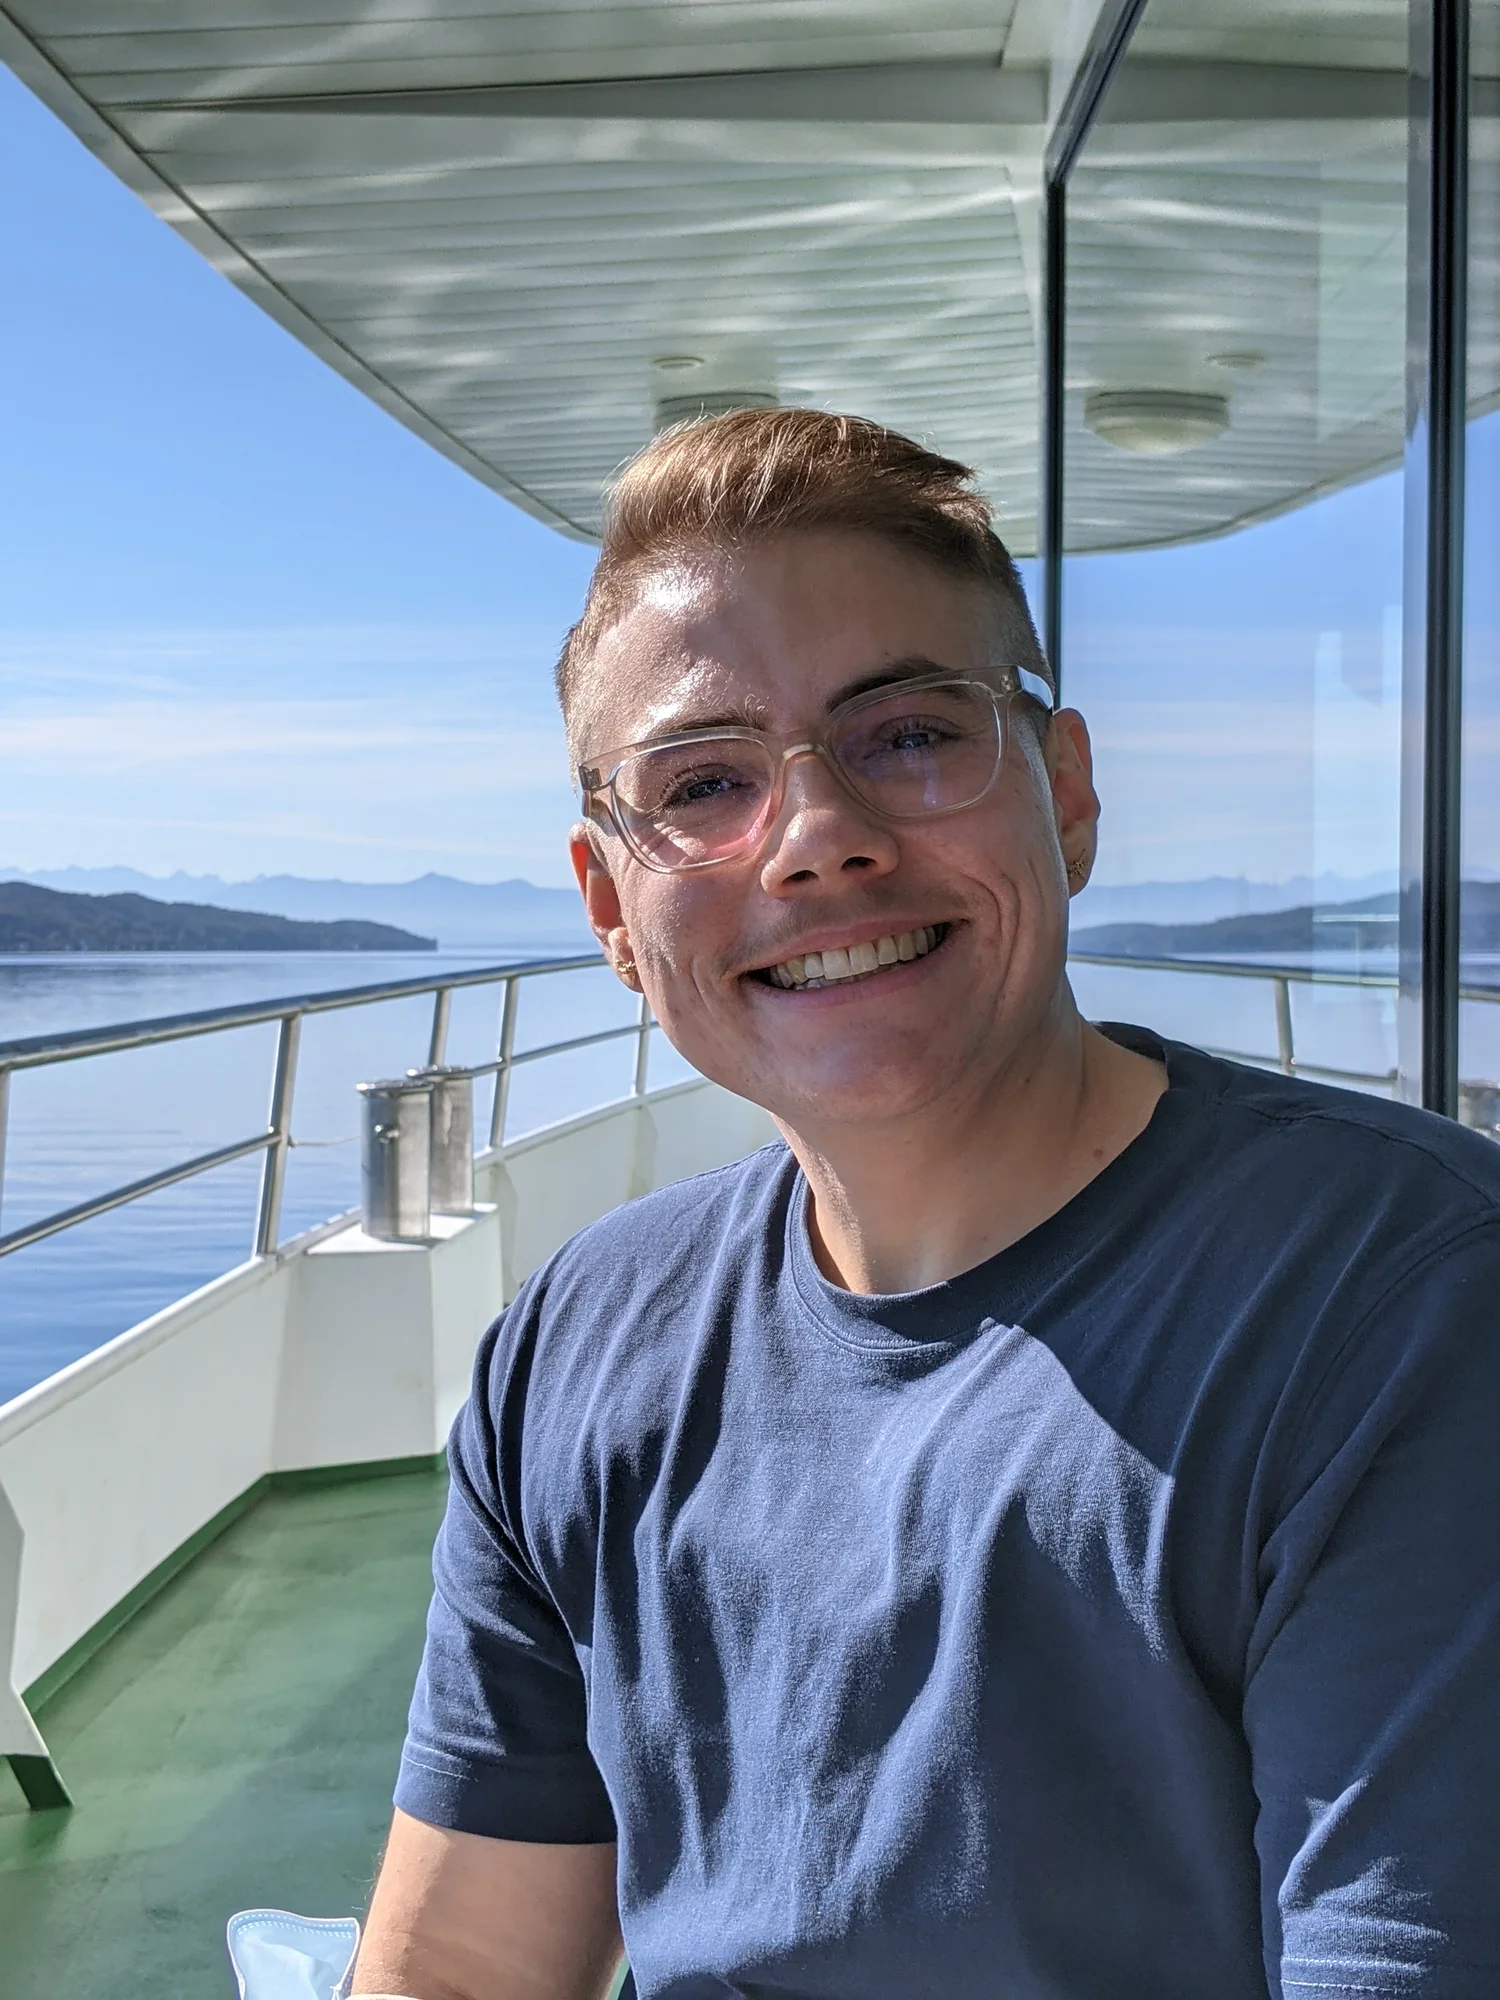 Porträtfoto von Adrian Hausner auf einem kleinen Schiff auf dem Starnberger See